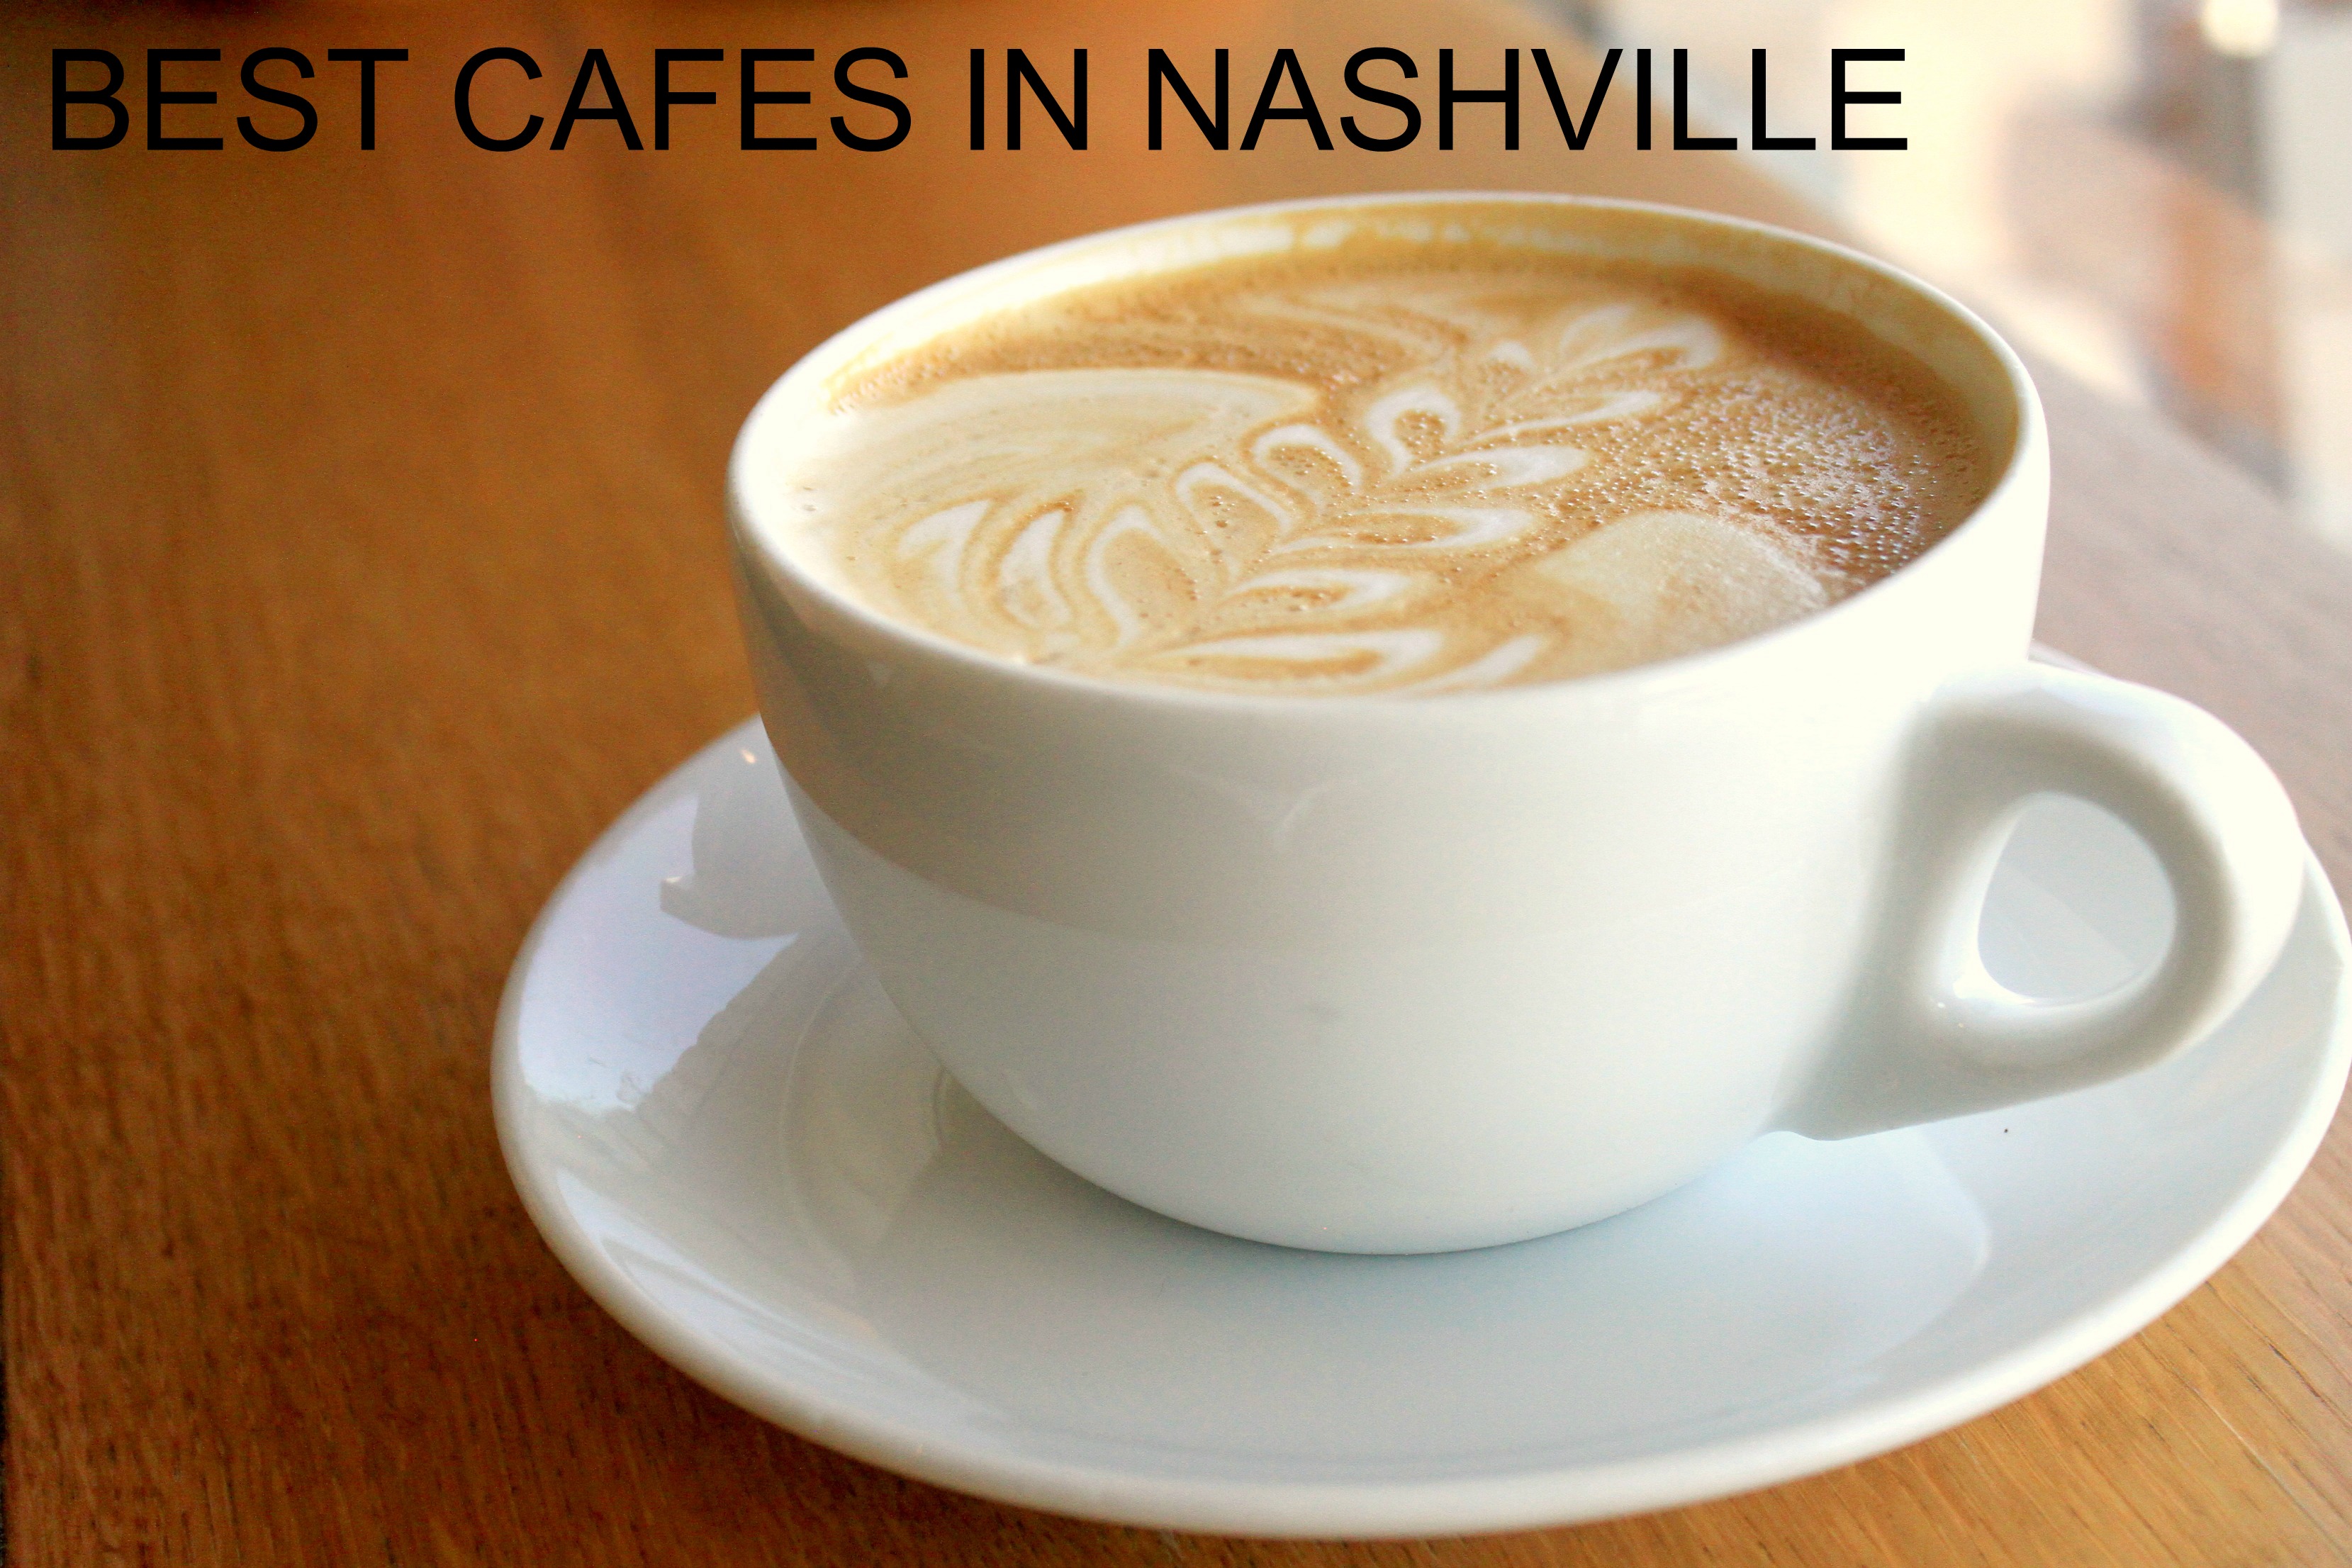 Best Cafes in Nashville